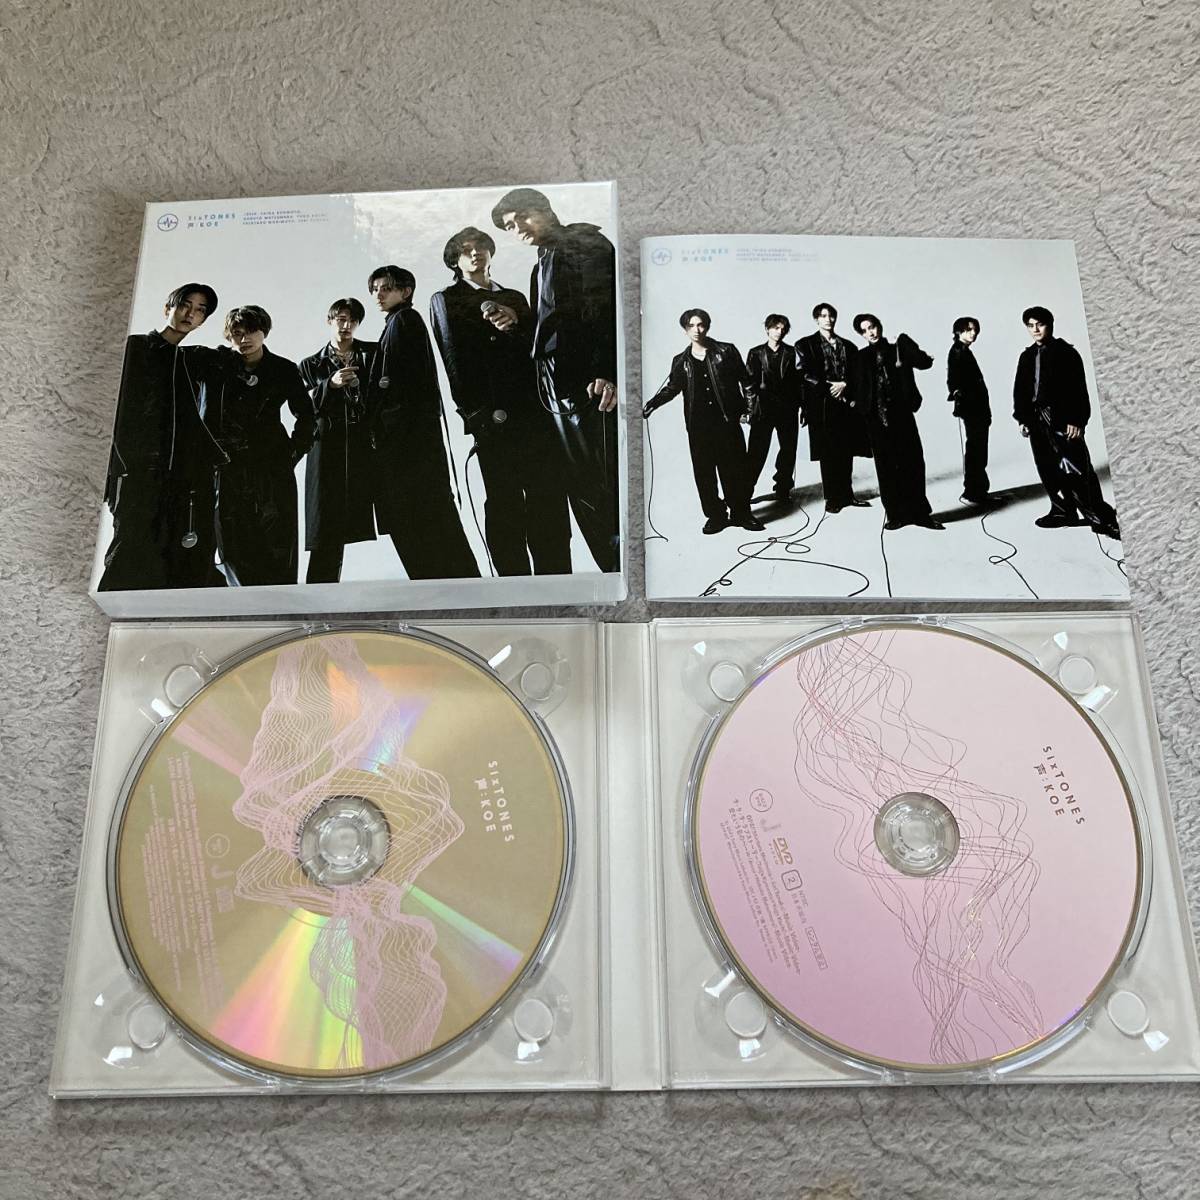 SixTONES アルバム 声 初回盤B CD+DVD シリアルコードなし ストーンズ 